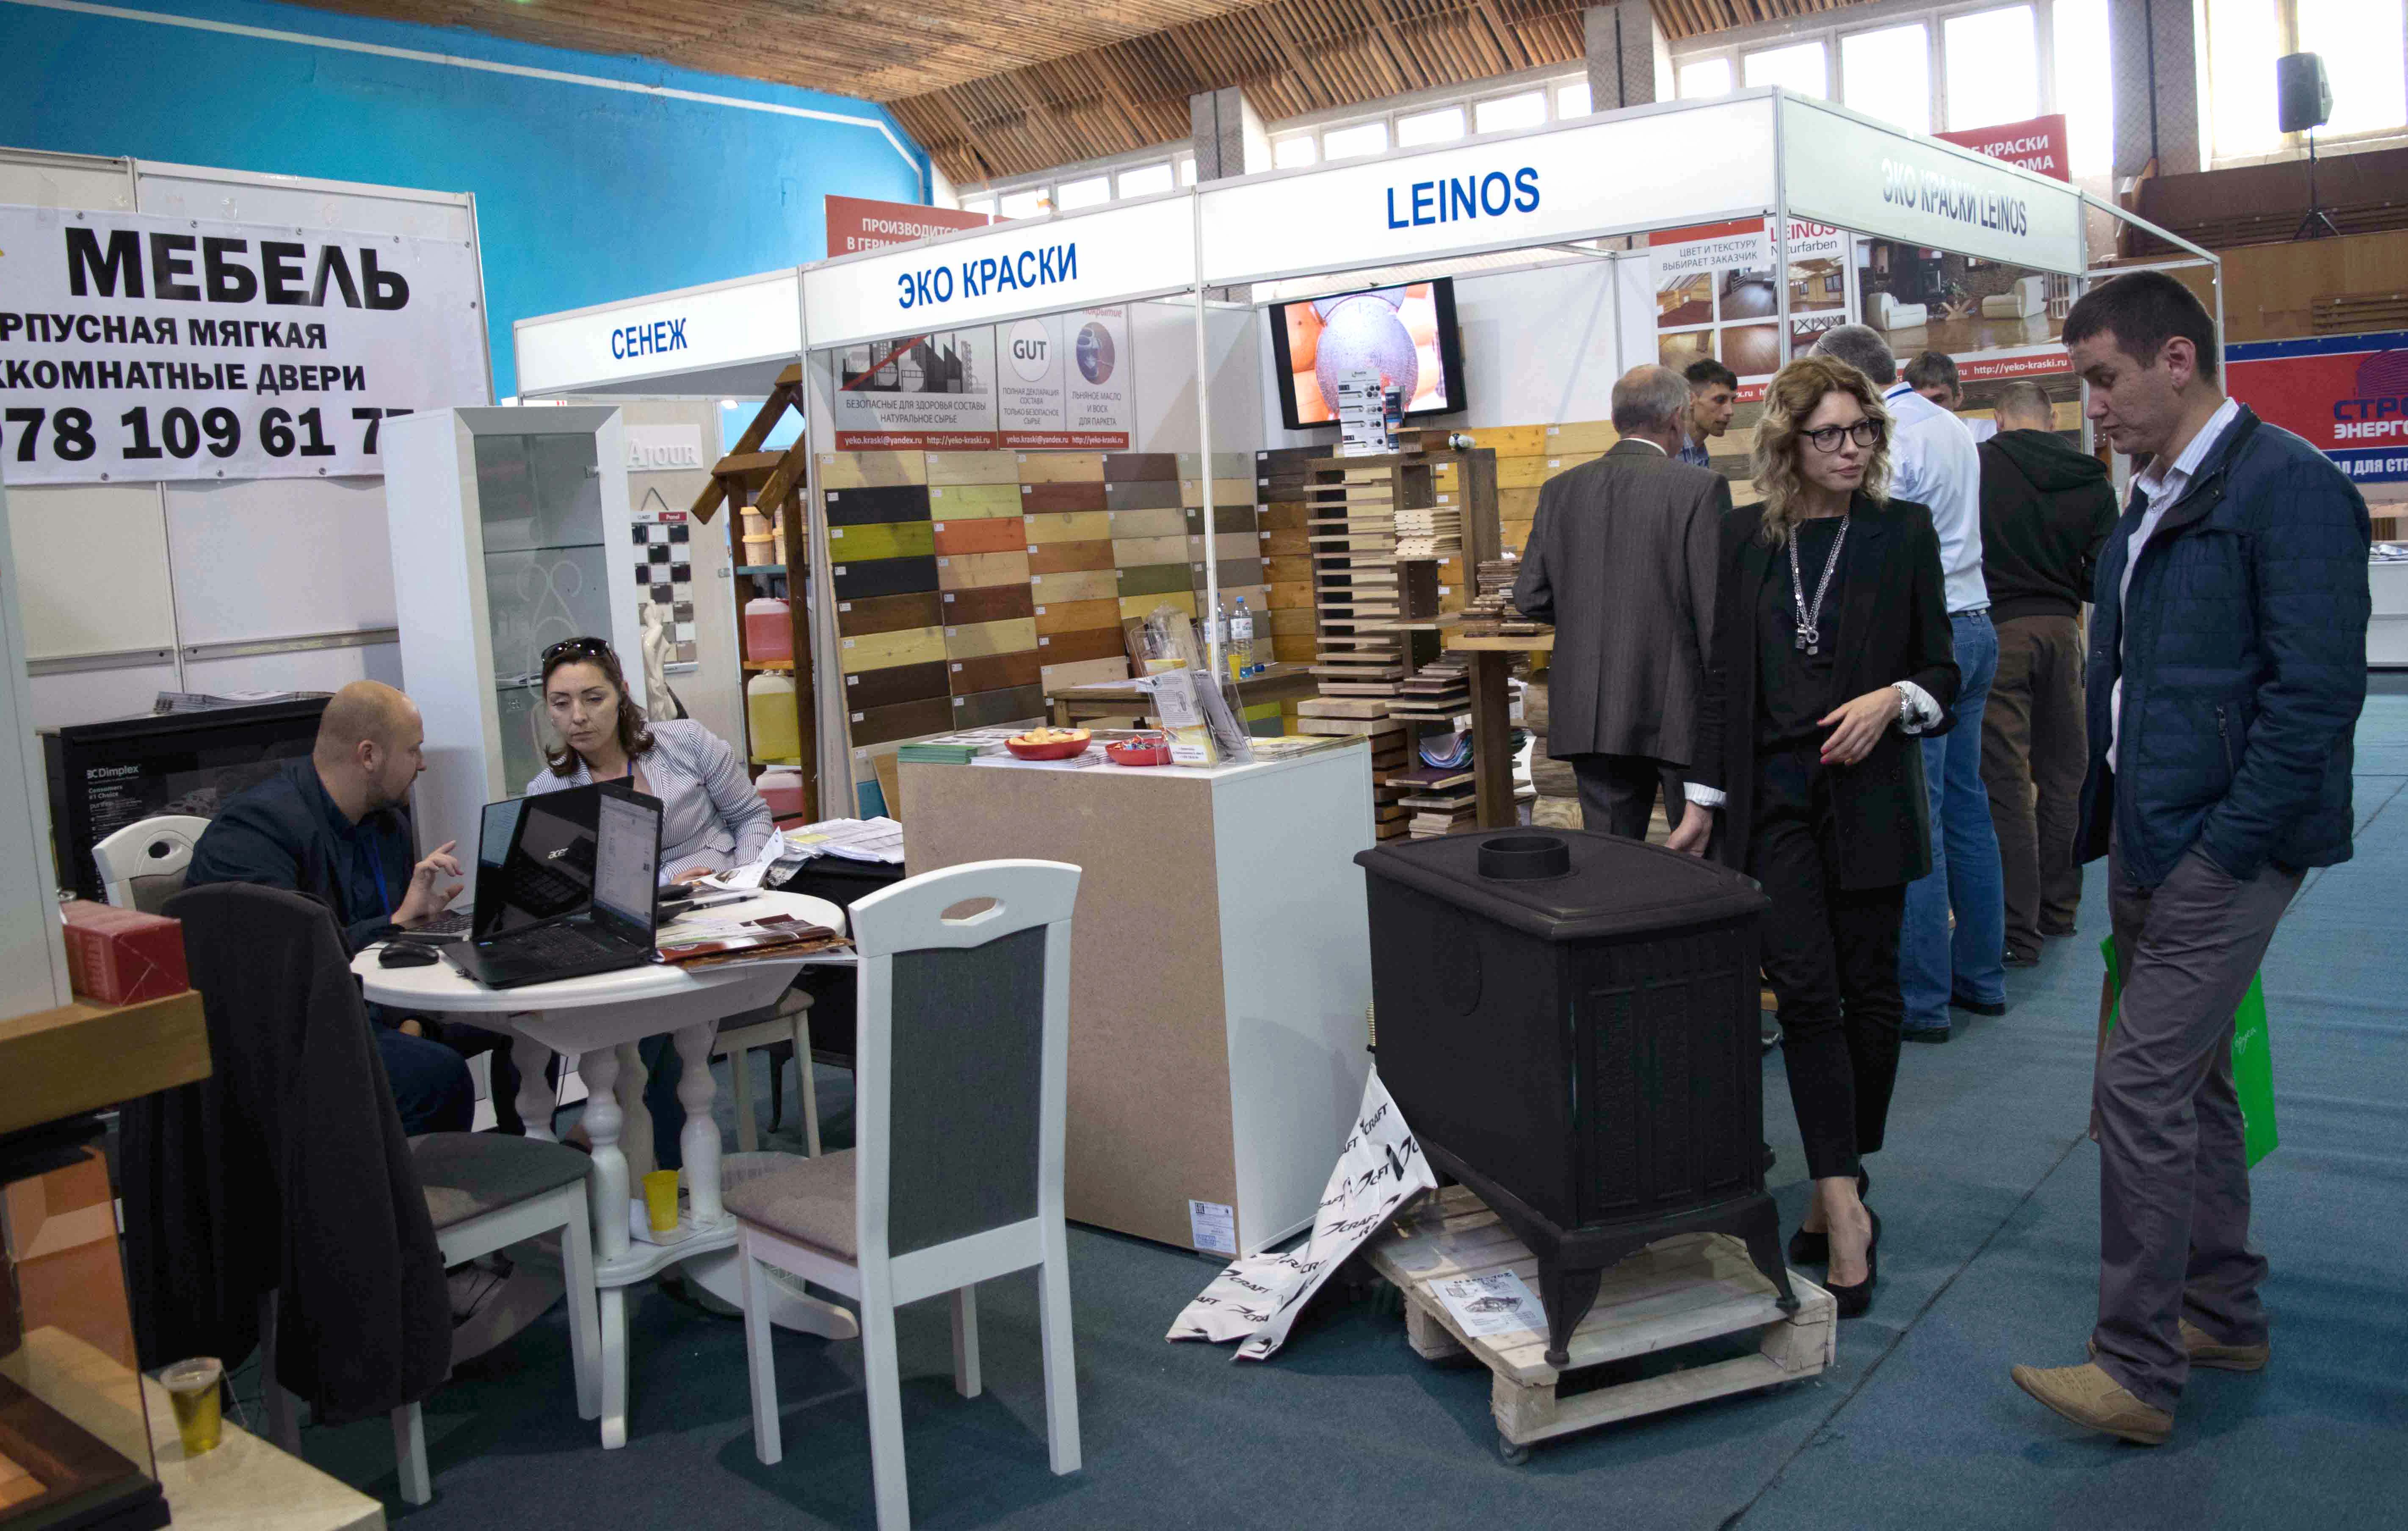 Мебельная выставка в Крыму